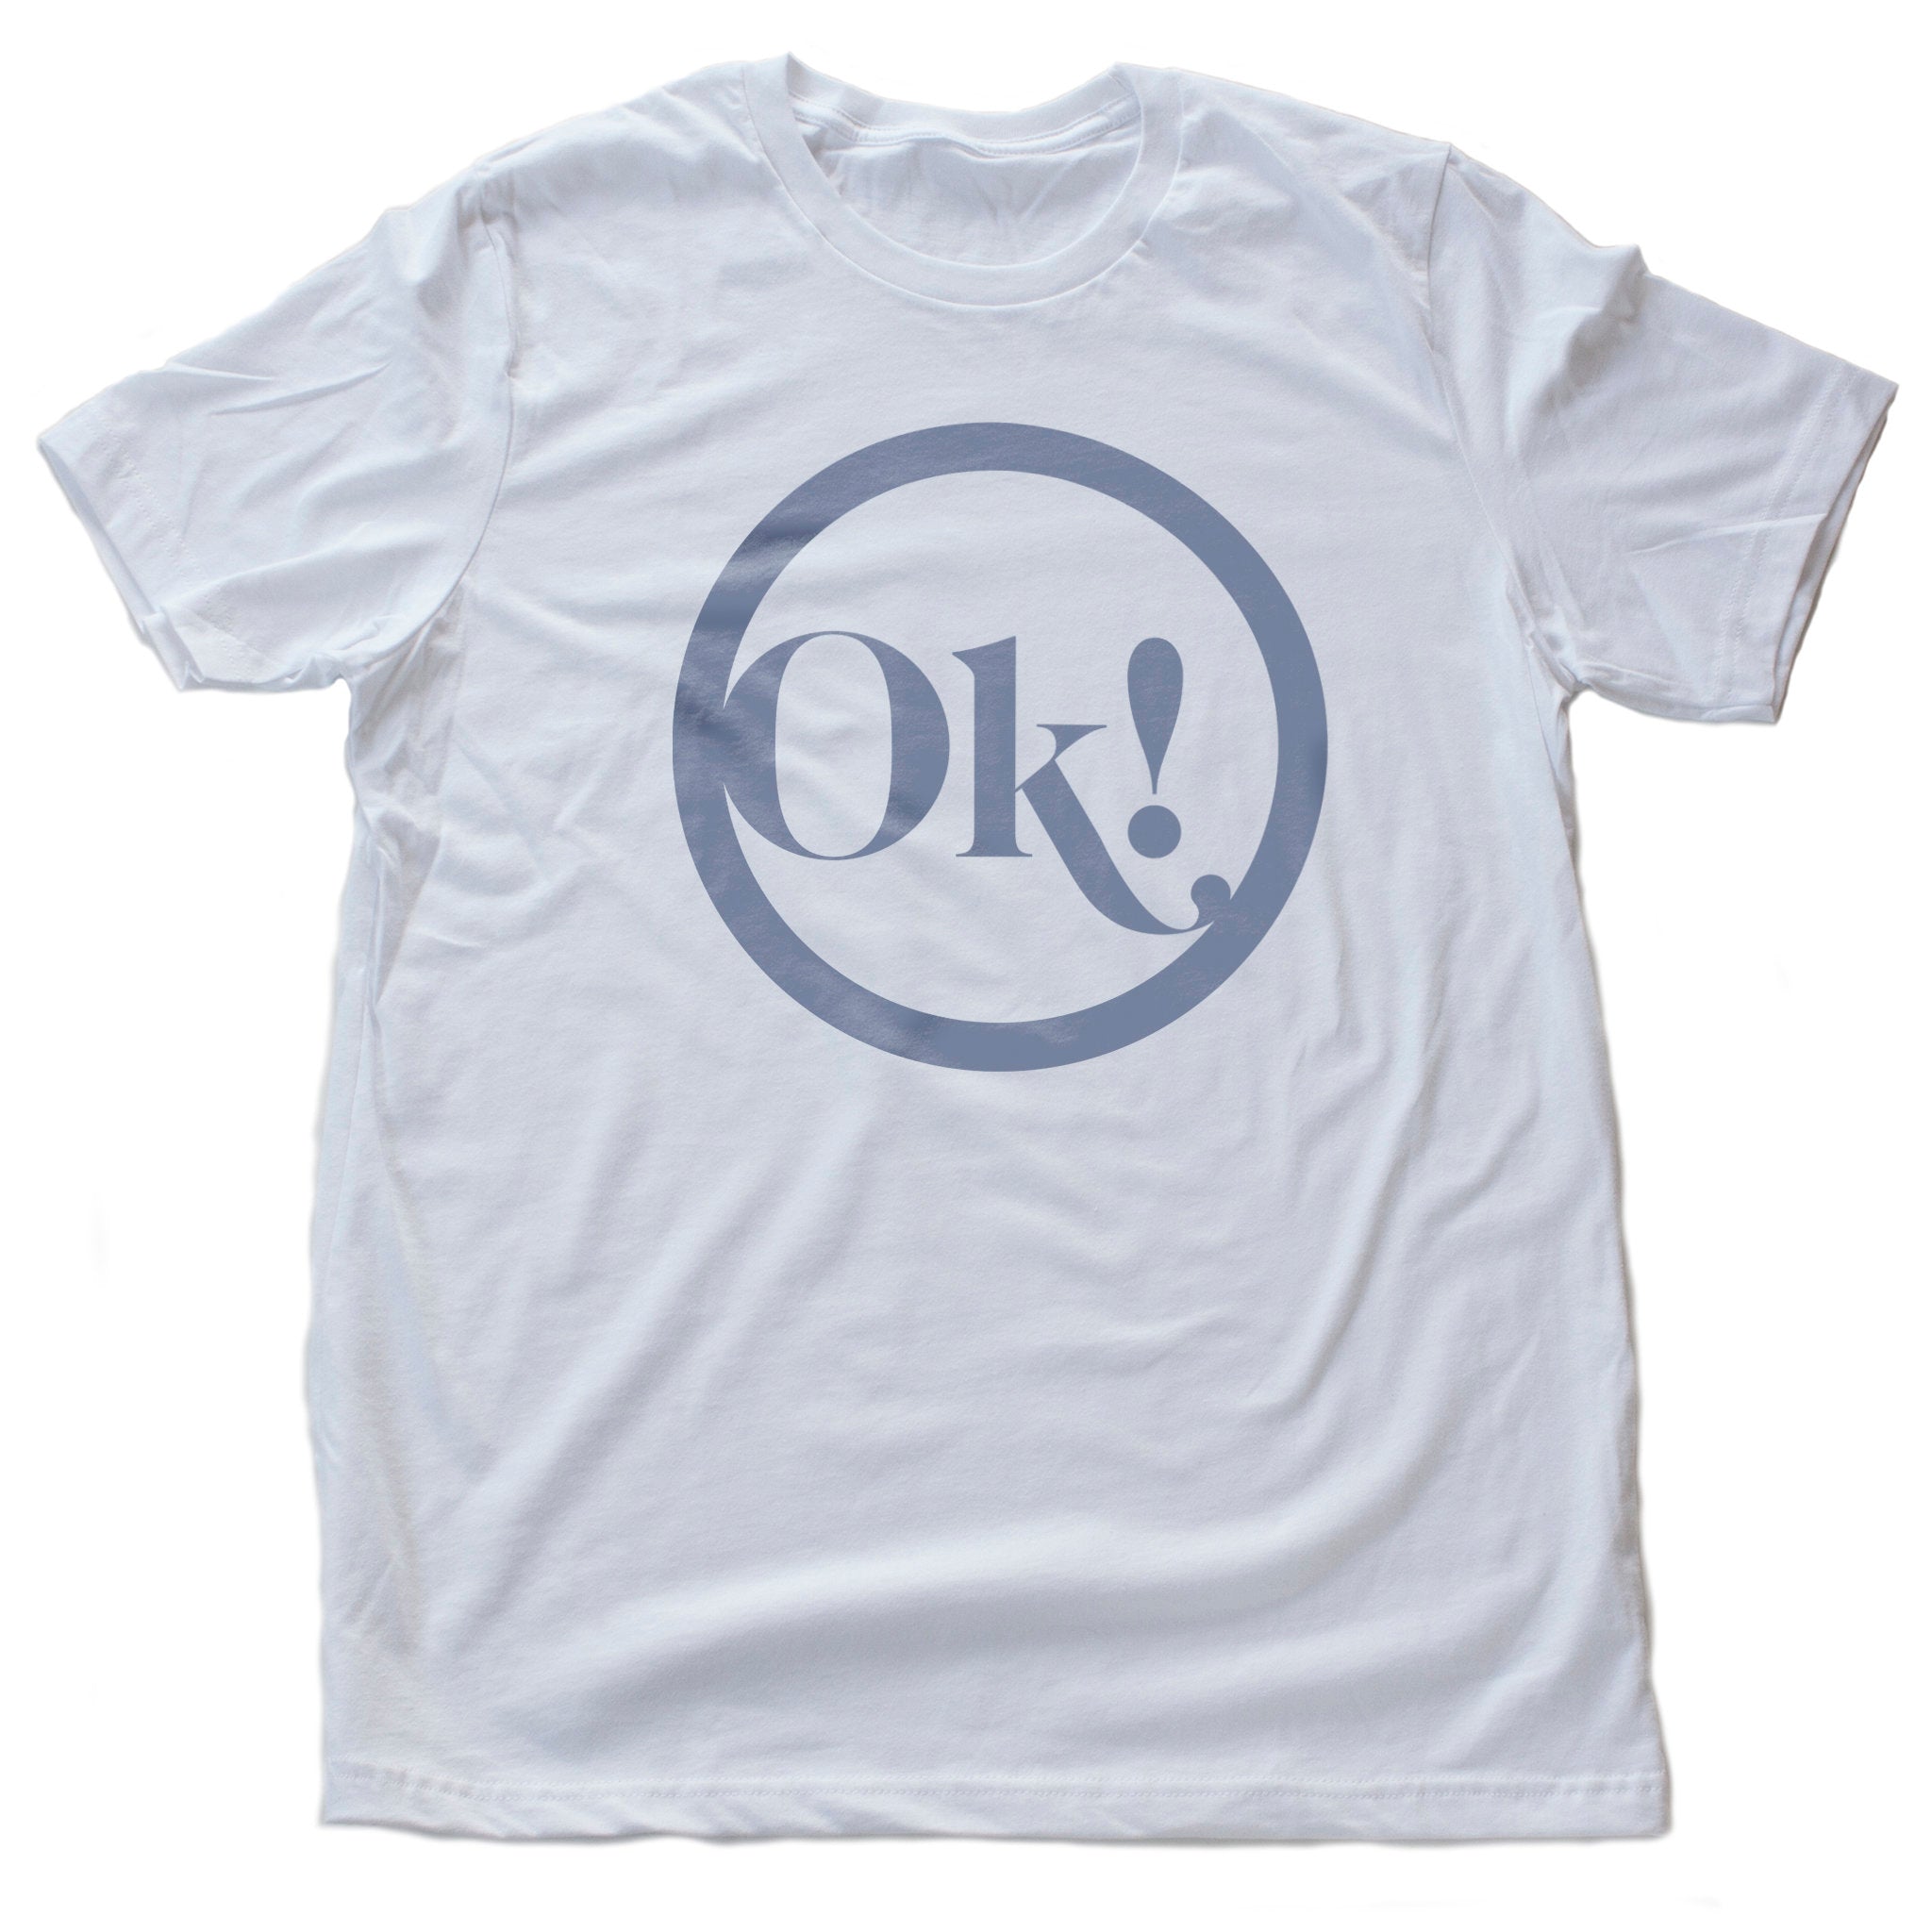 Ok! — premium unisex t-shirt